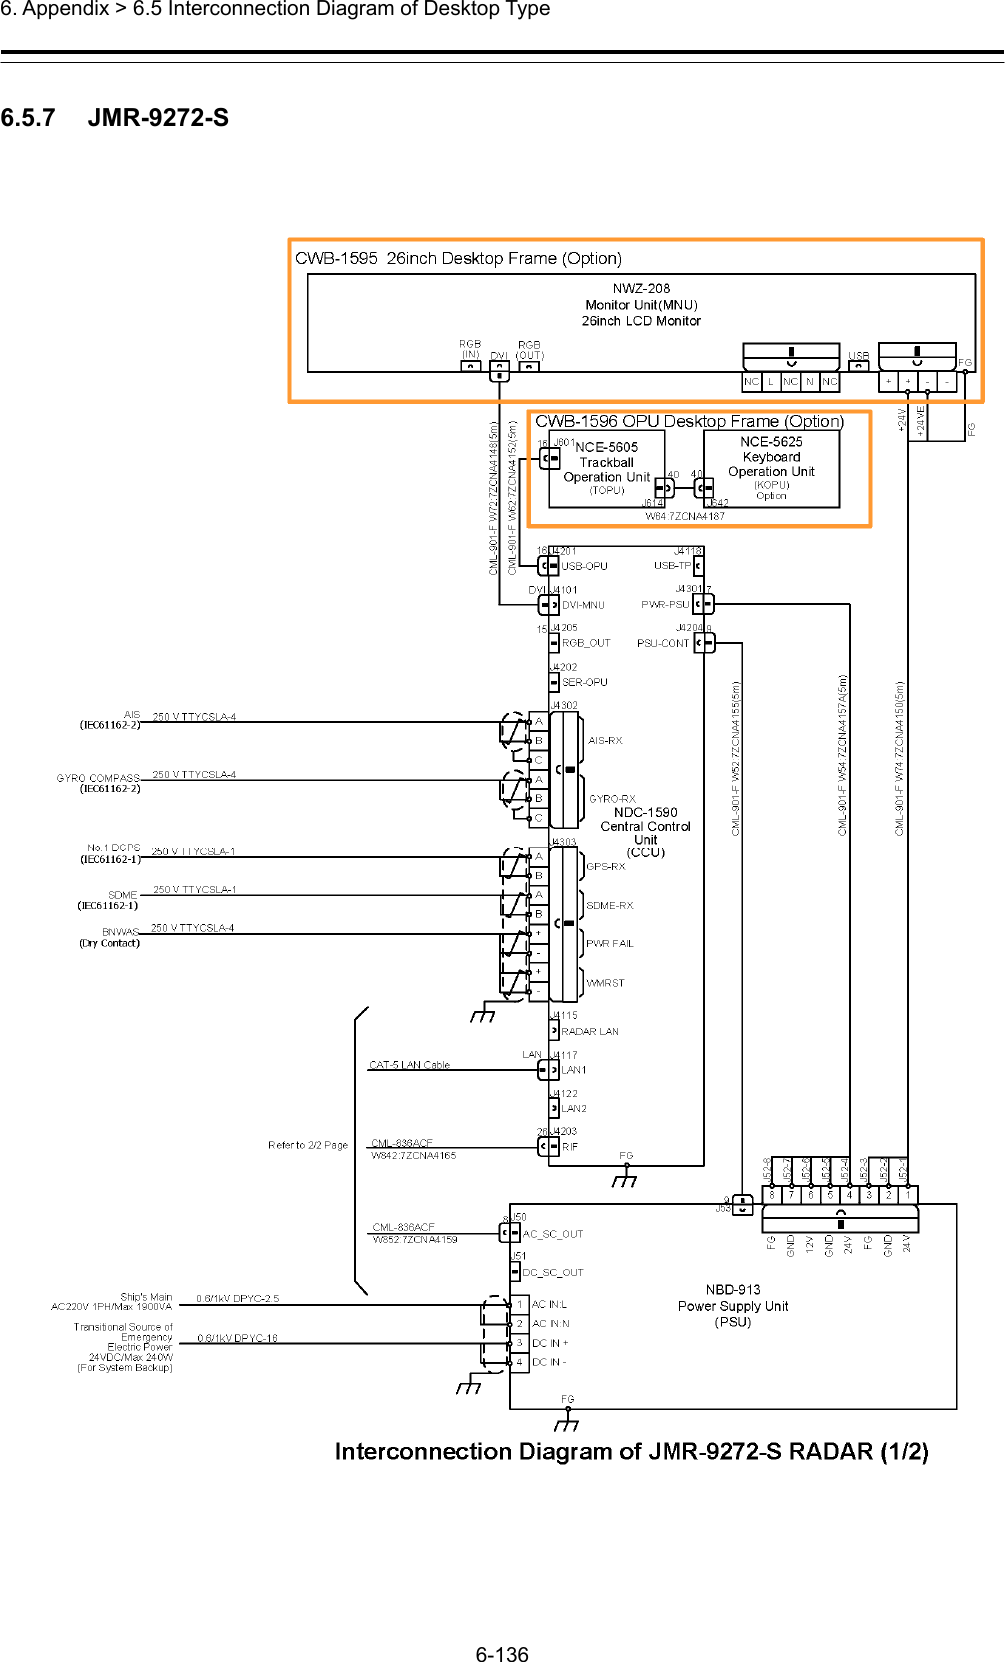  6. Appendix &gt; 6.5 Interconnection Diagram of Desktop Type 6-136  6.5.7   JMR-9272-S  